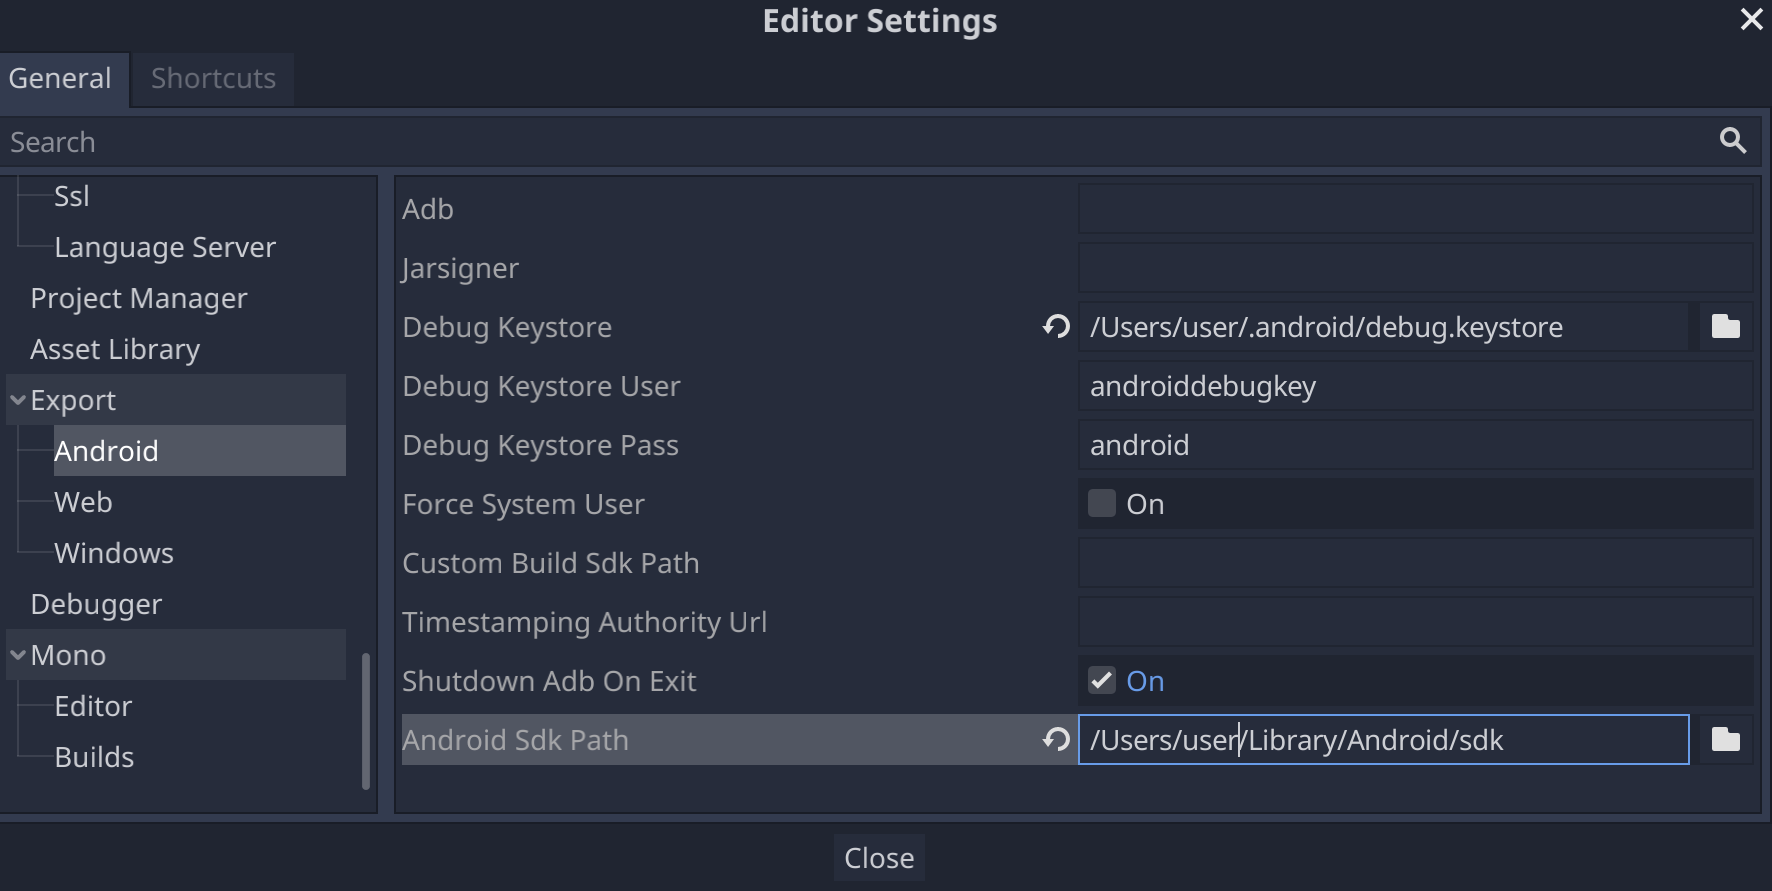 إعداد مسار حزمة تطوير البرامج (SDK) لنظام التشغيل Android في إعدادات محرِّر Godot